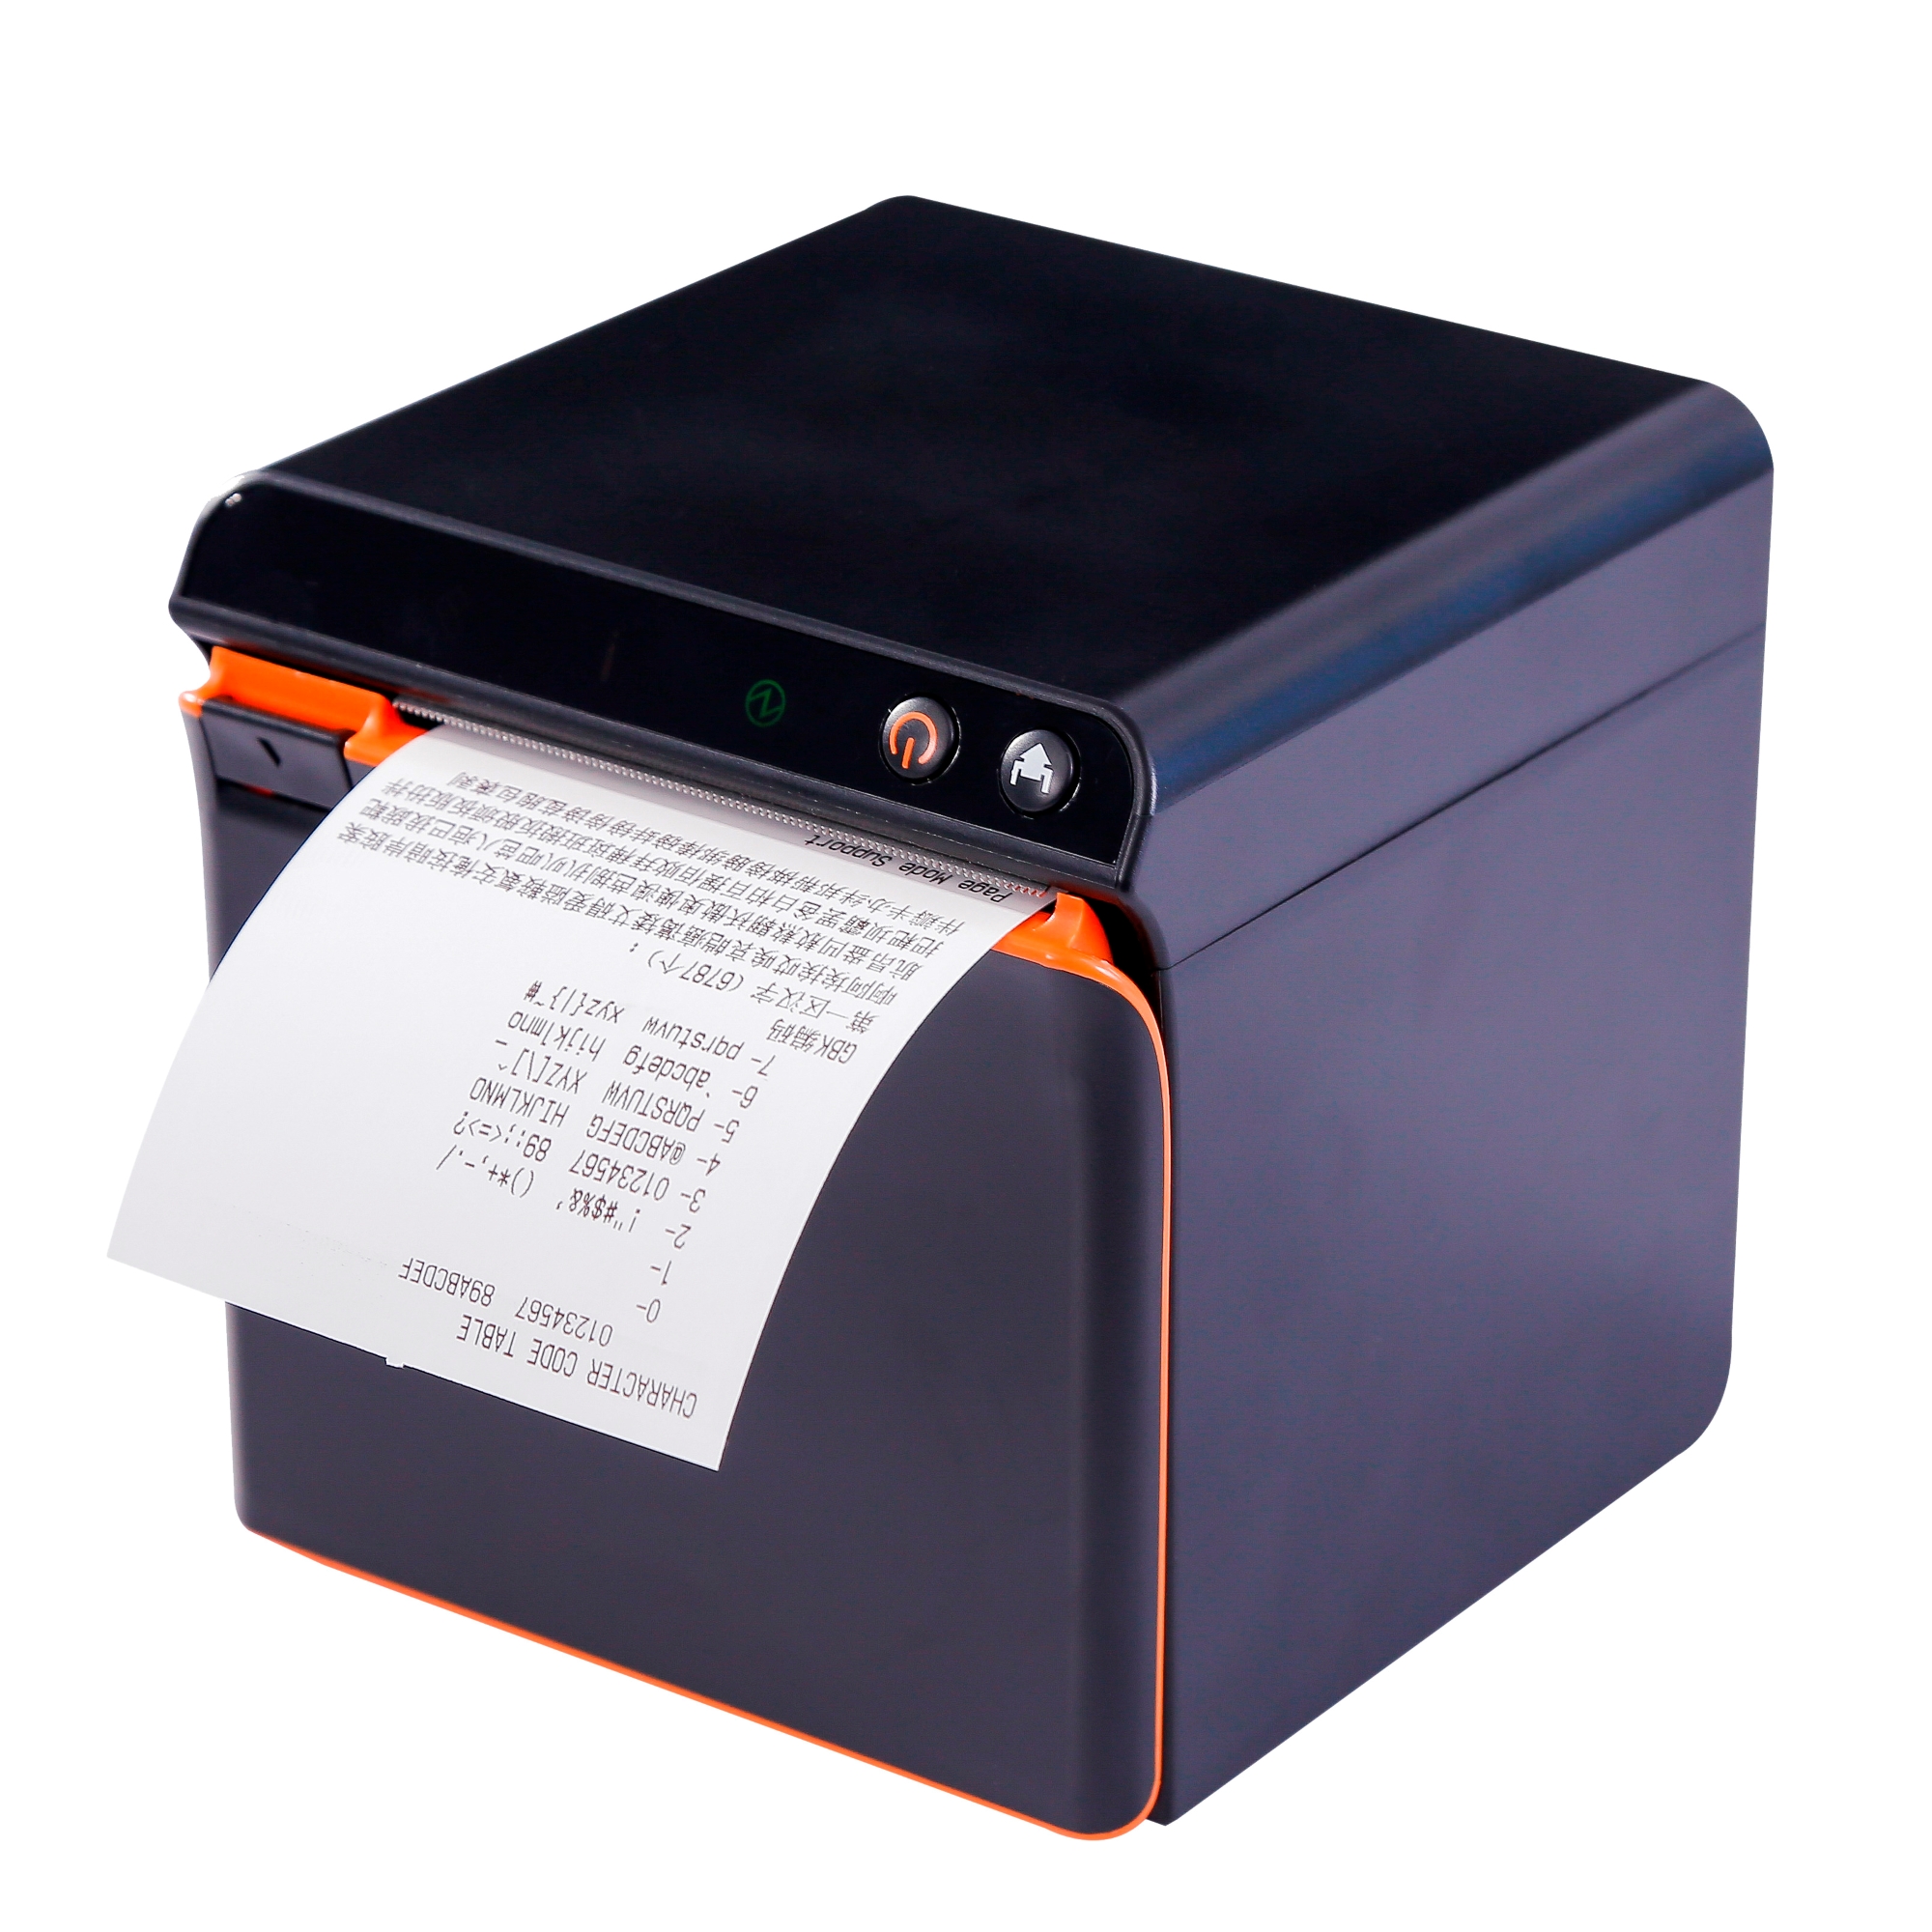 Casier à monnaie tiroir-caisse EC500 - TpvMarket